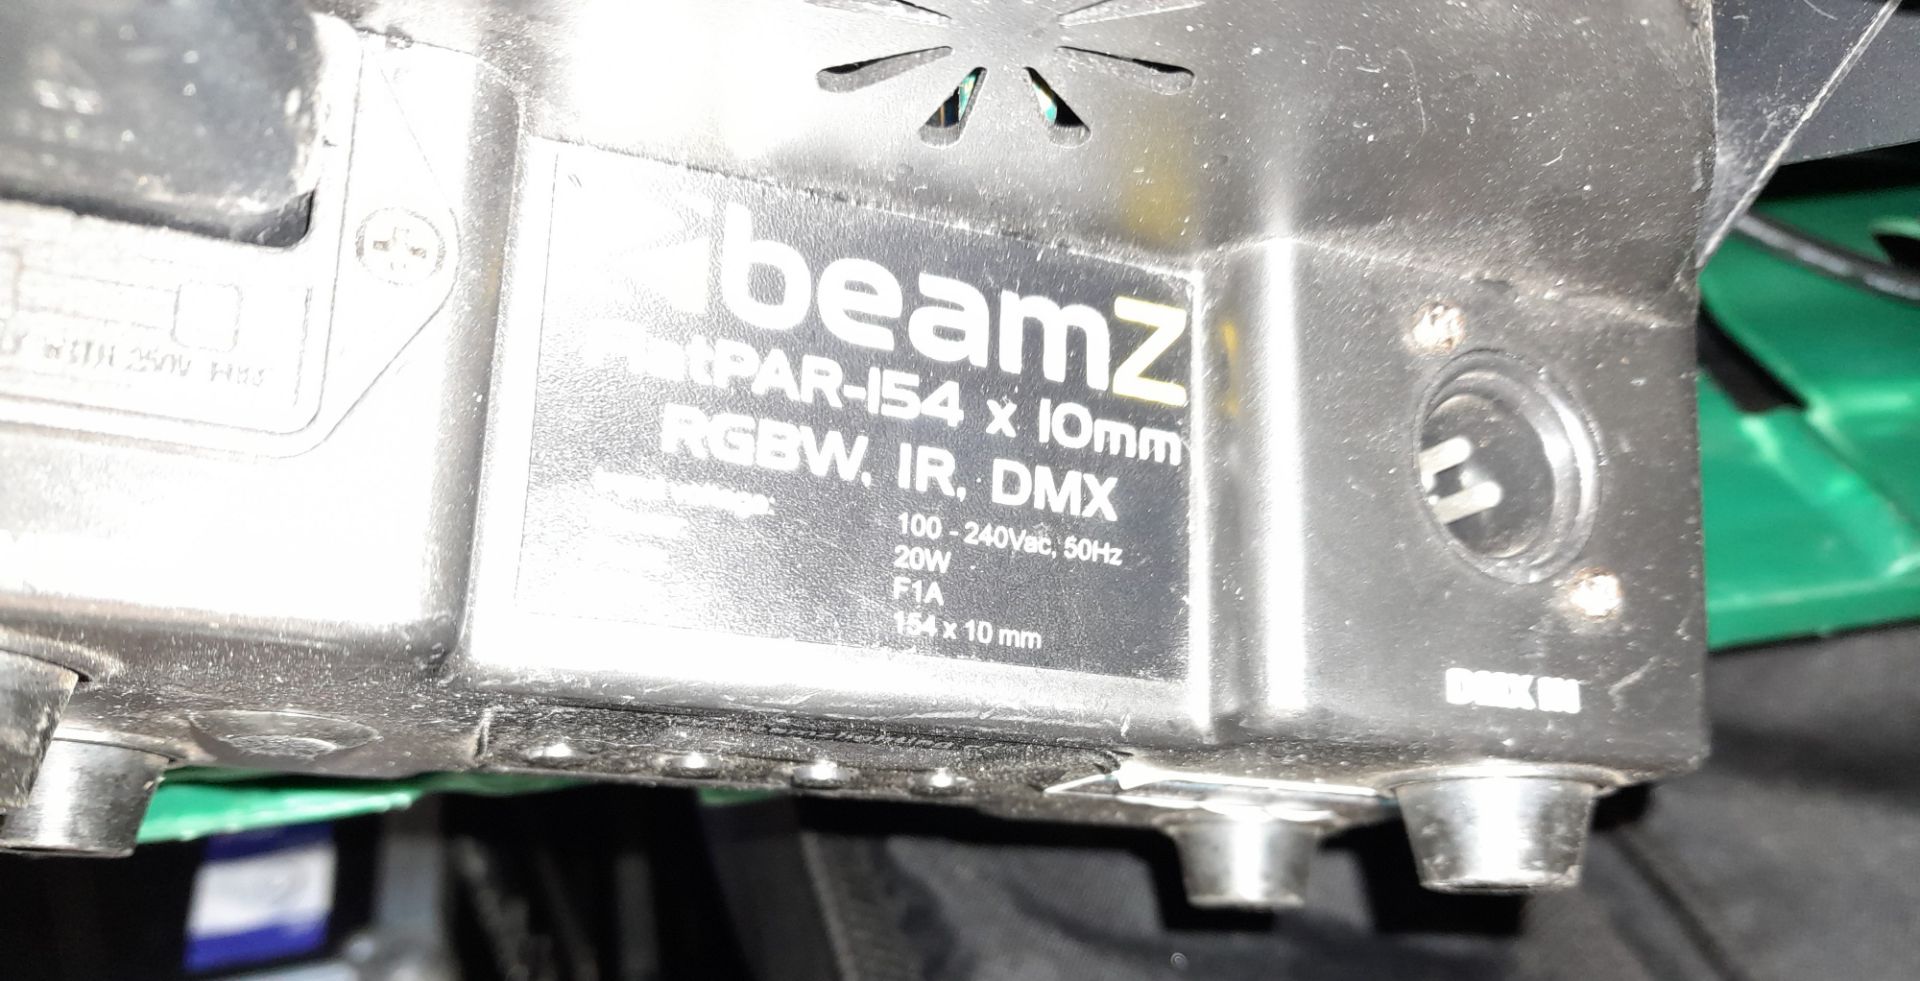 12 x Beamx FlatPar 154 LED uplighters - Image 4 of 4